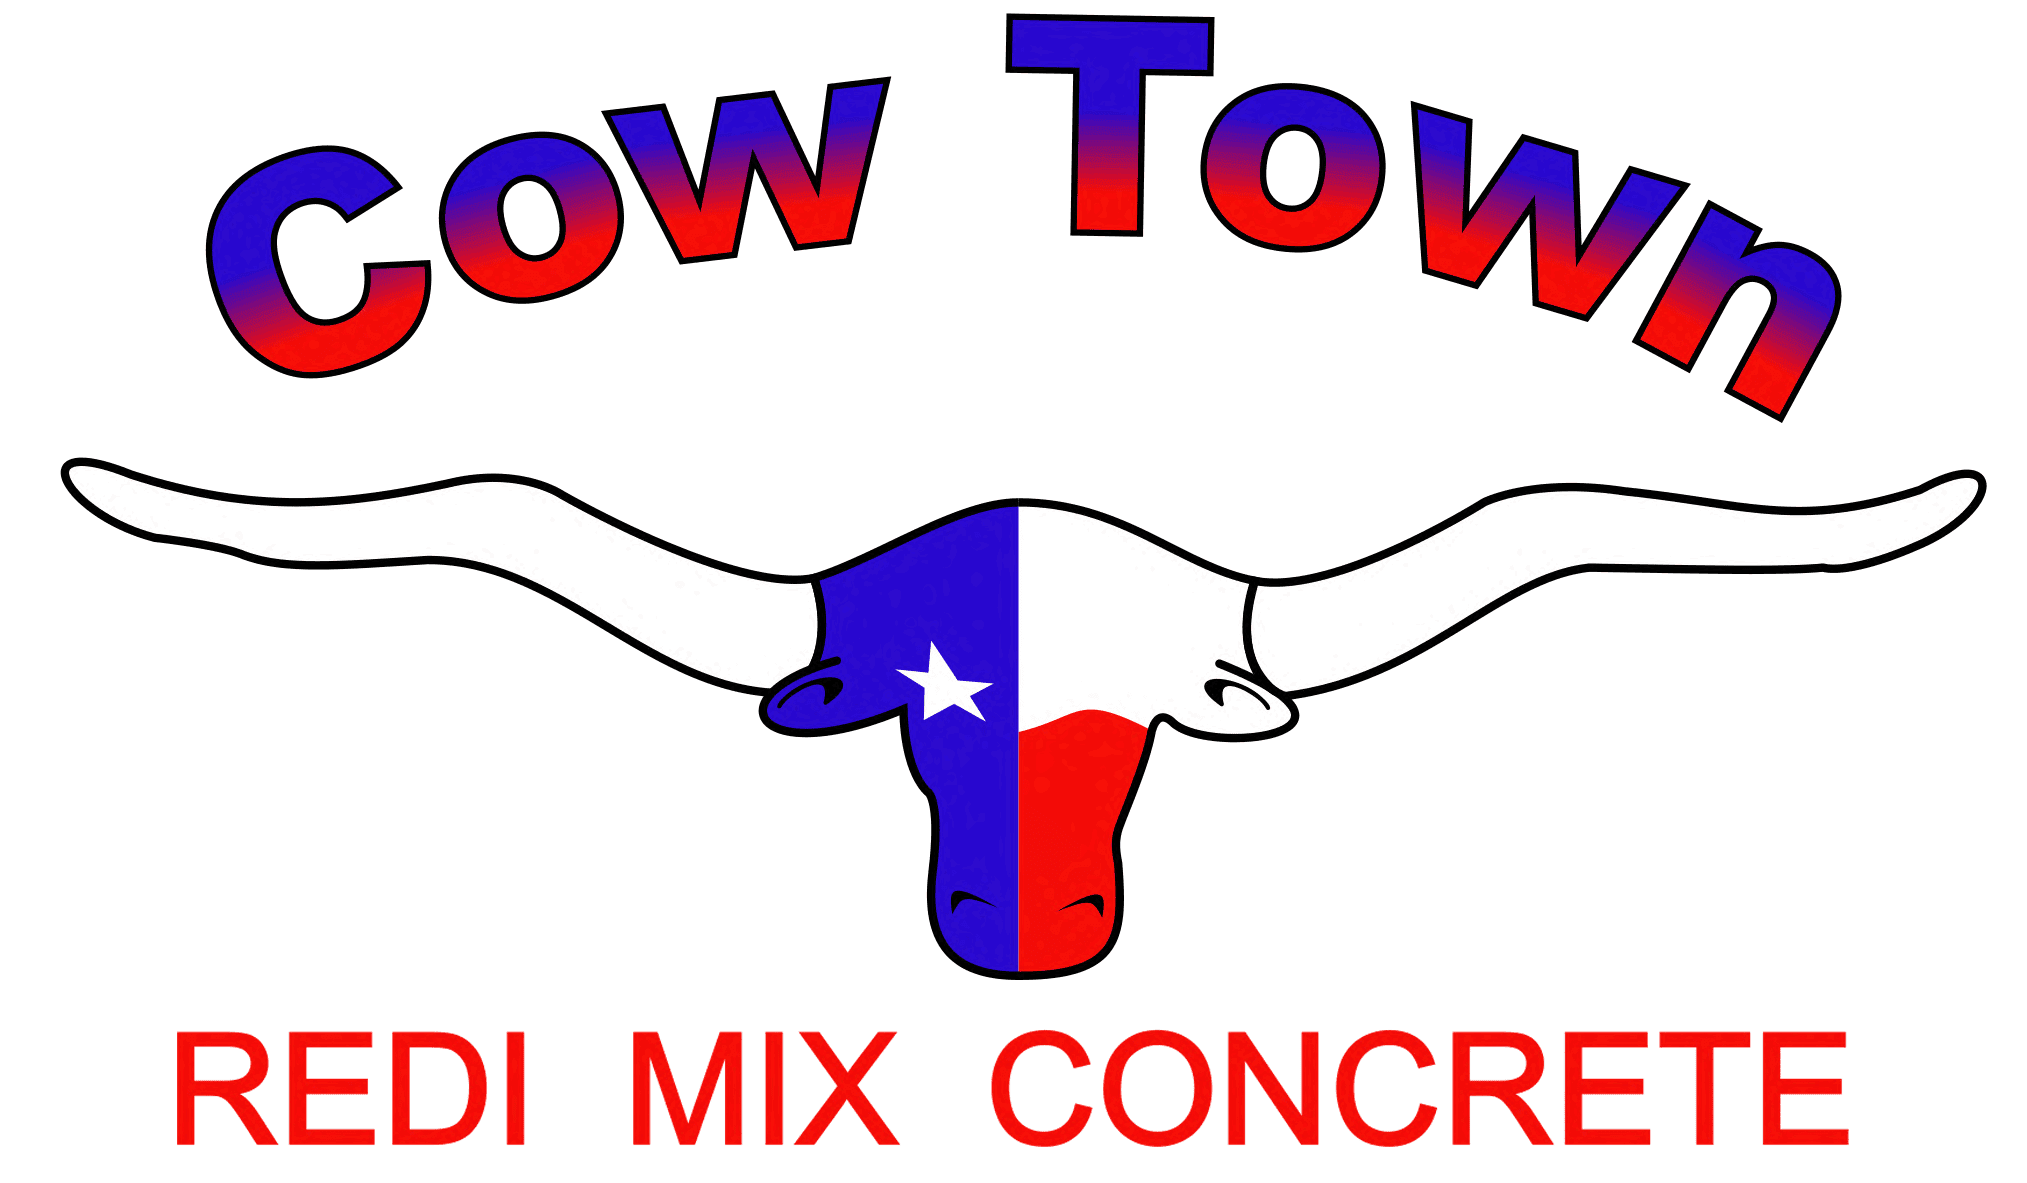 Cow Town Redi Mix